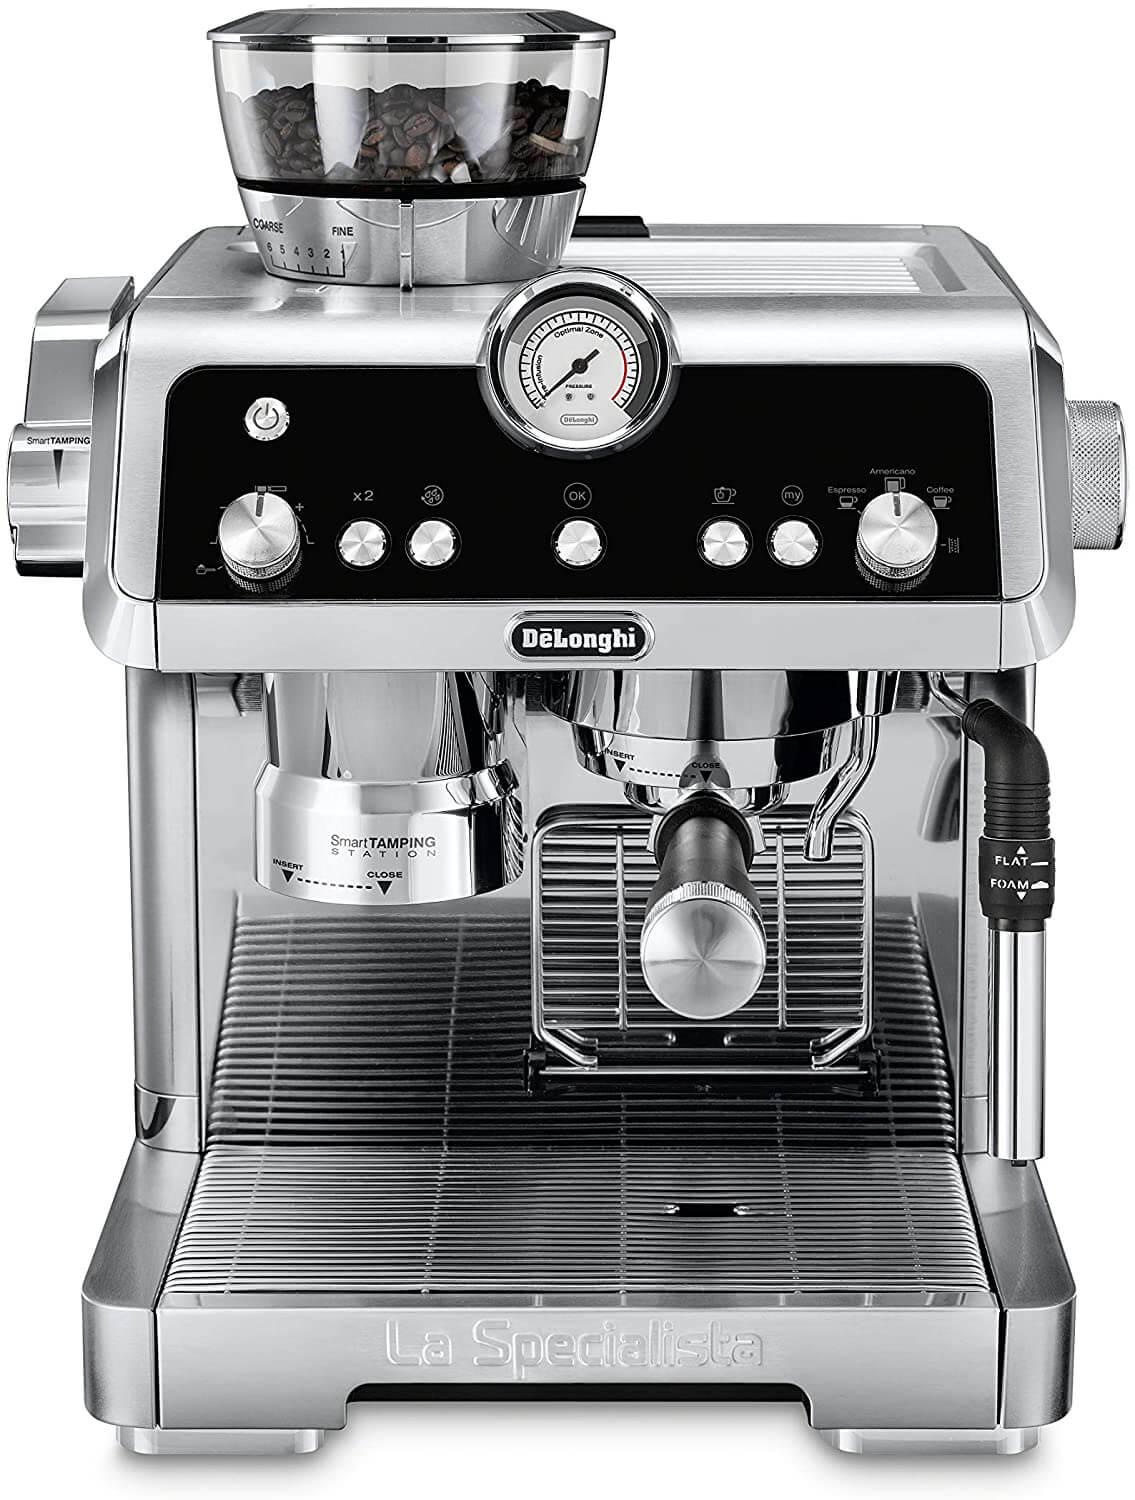 DeLonghi-La-Specialista-Espresso-Machine-with-Sensor-Grinder1